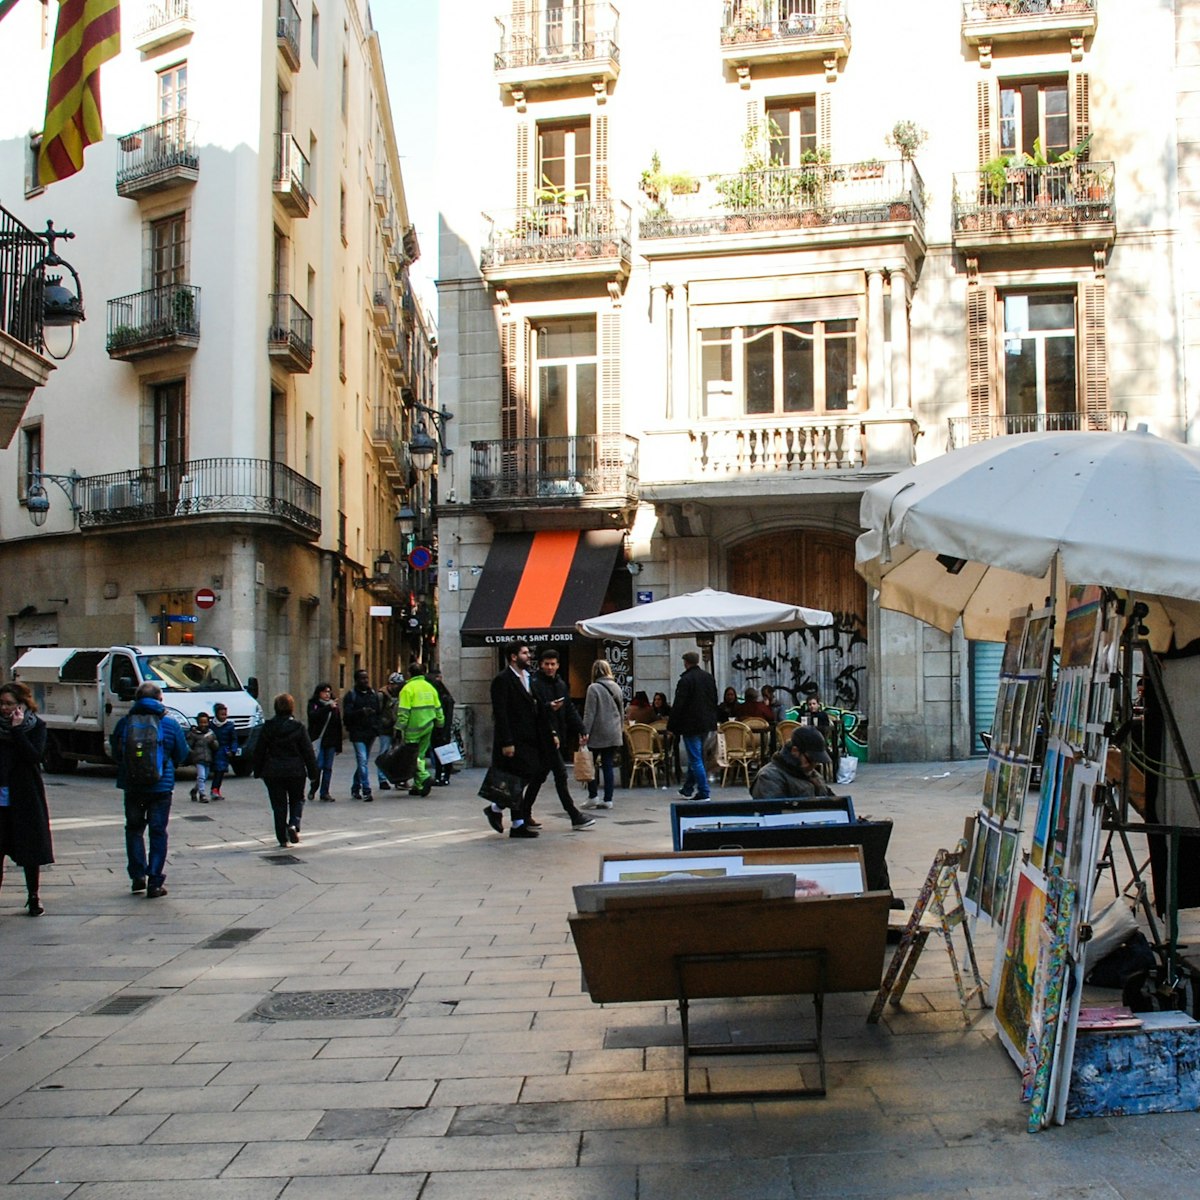 People entering Plaça de Sant Josep Oriol